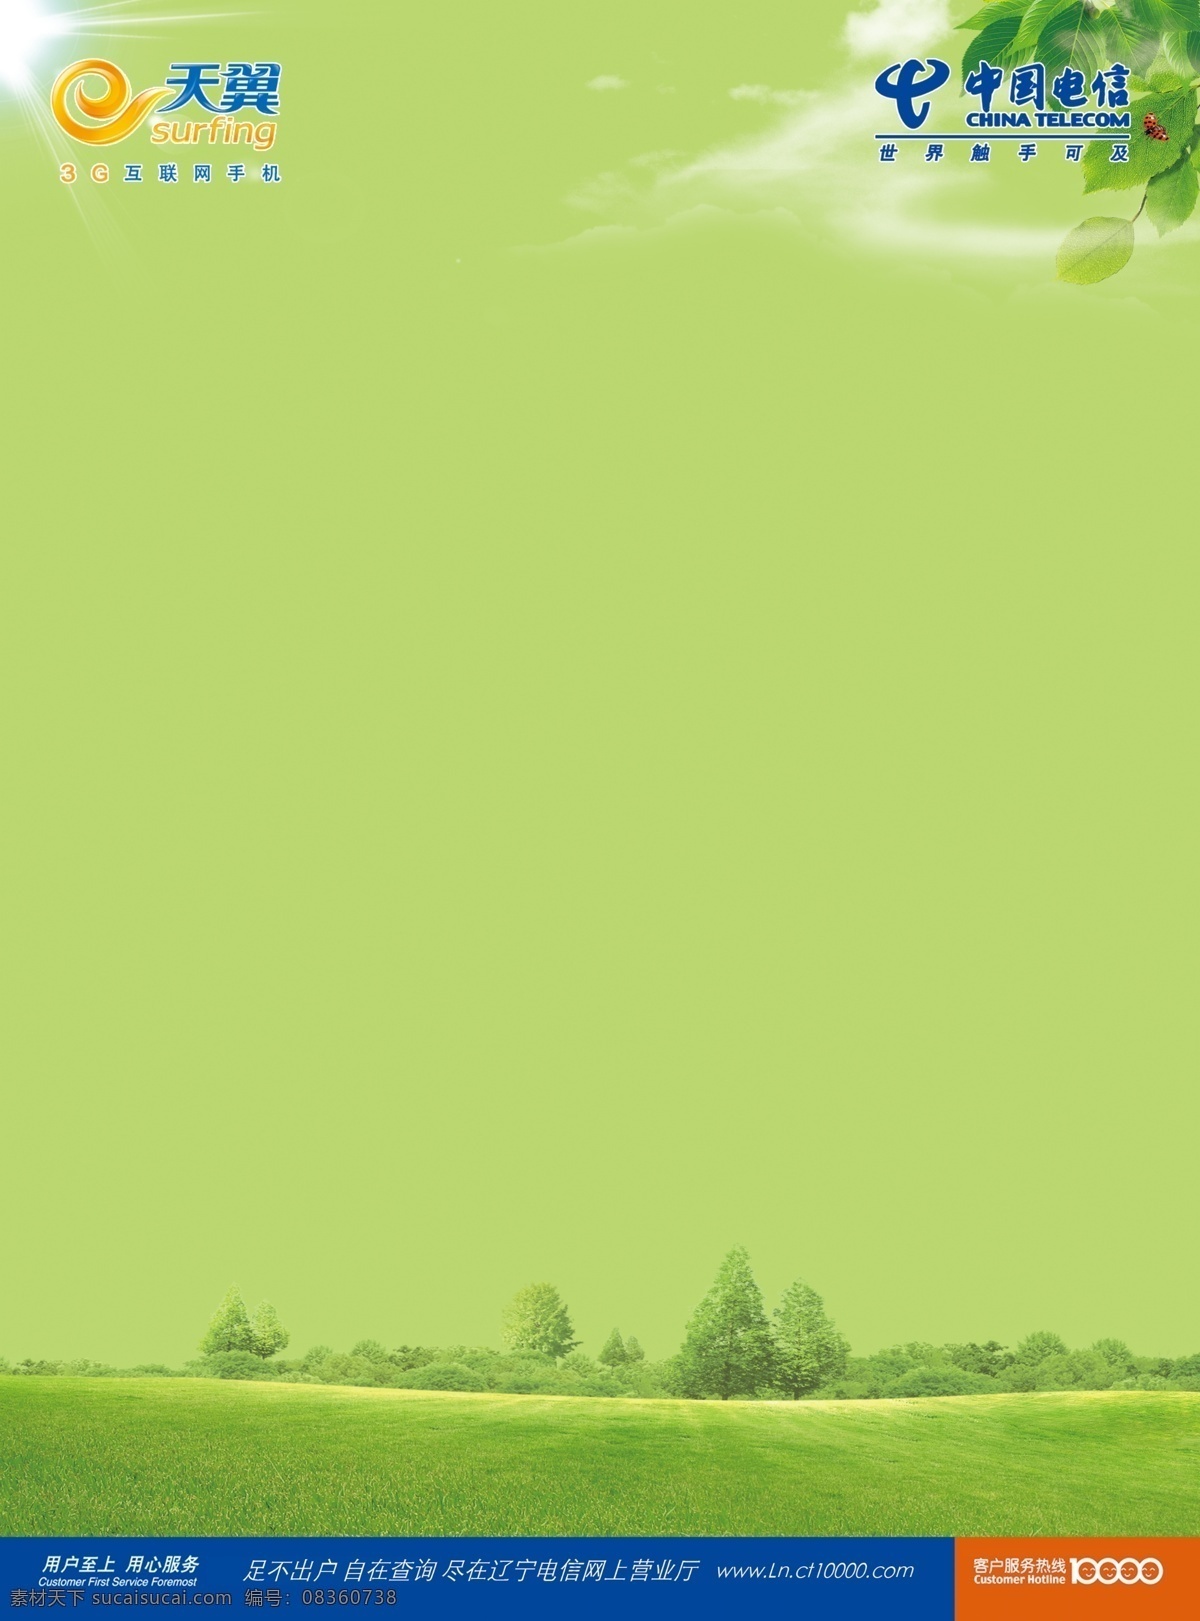 psd分层 大树 电信 电信素材下载 广告设计模板 绿色背景 电信模板下载 中国电信 源文件 海报背景图